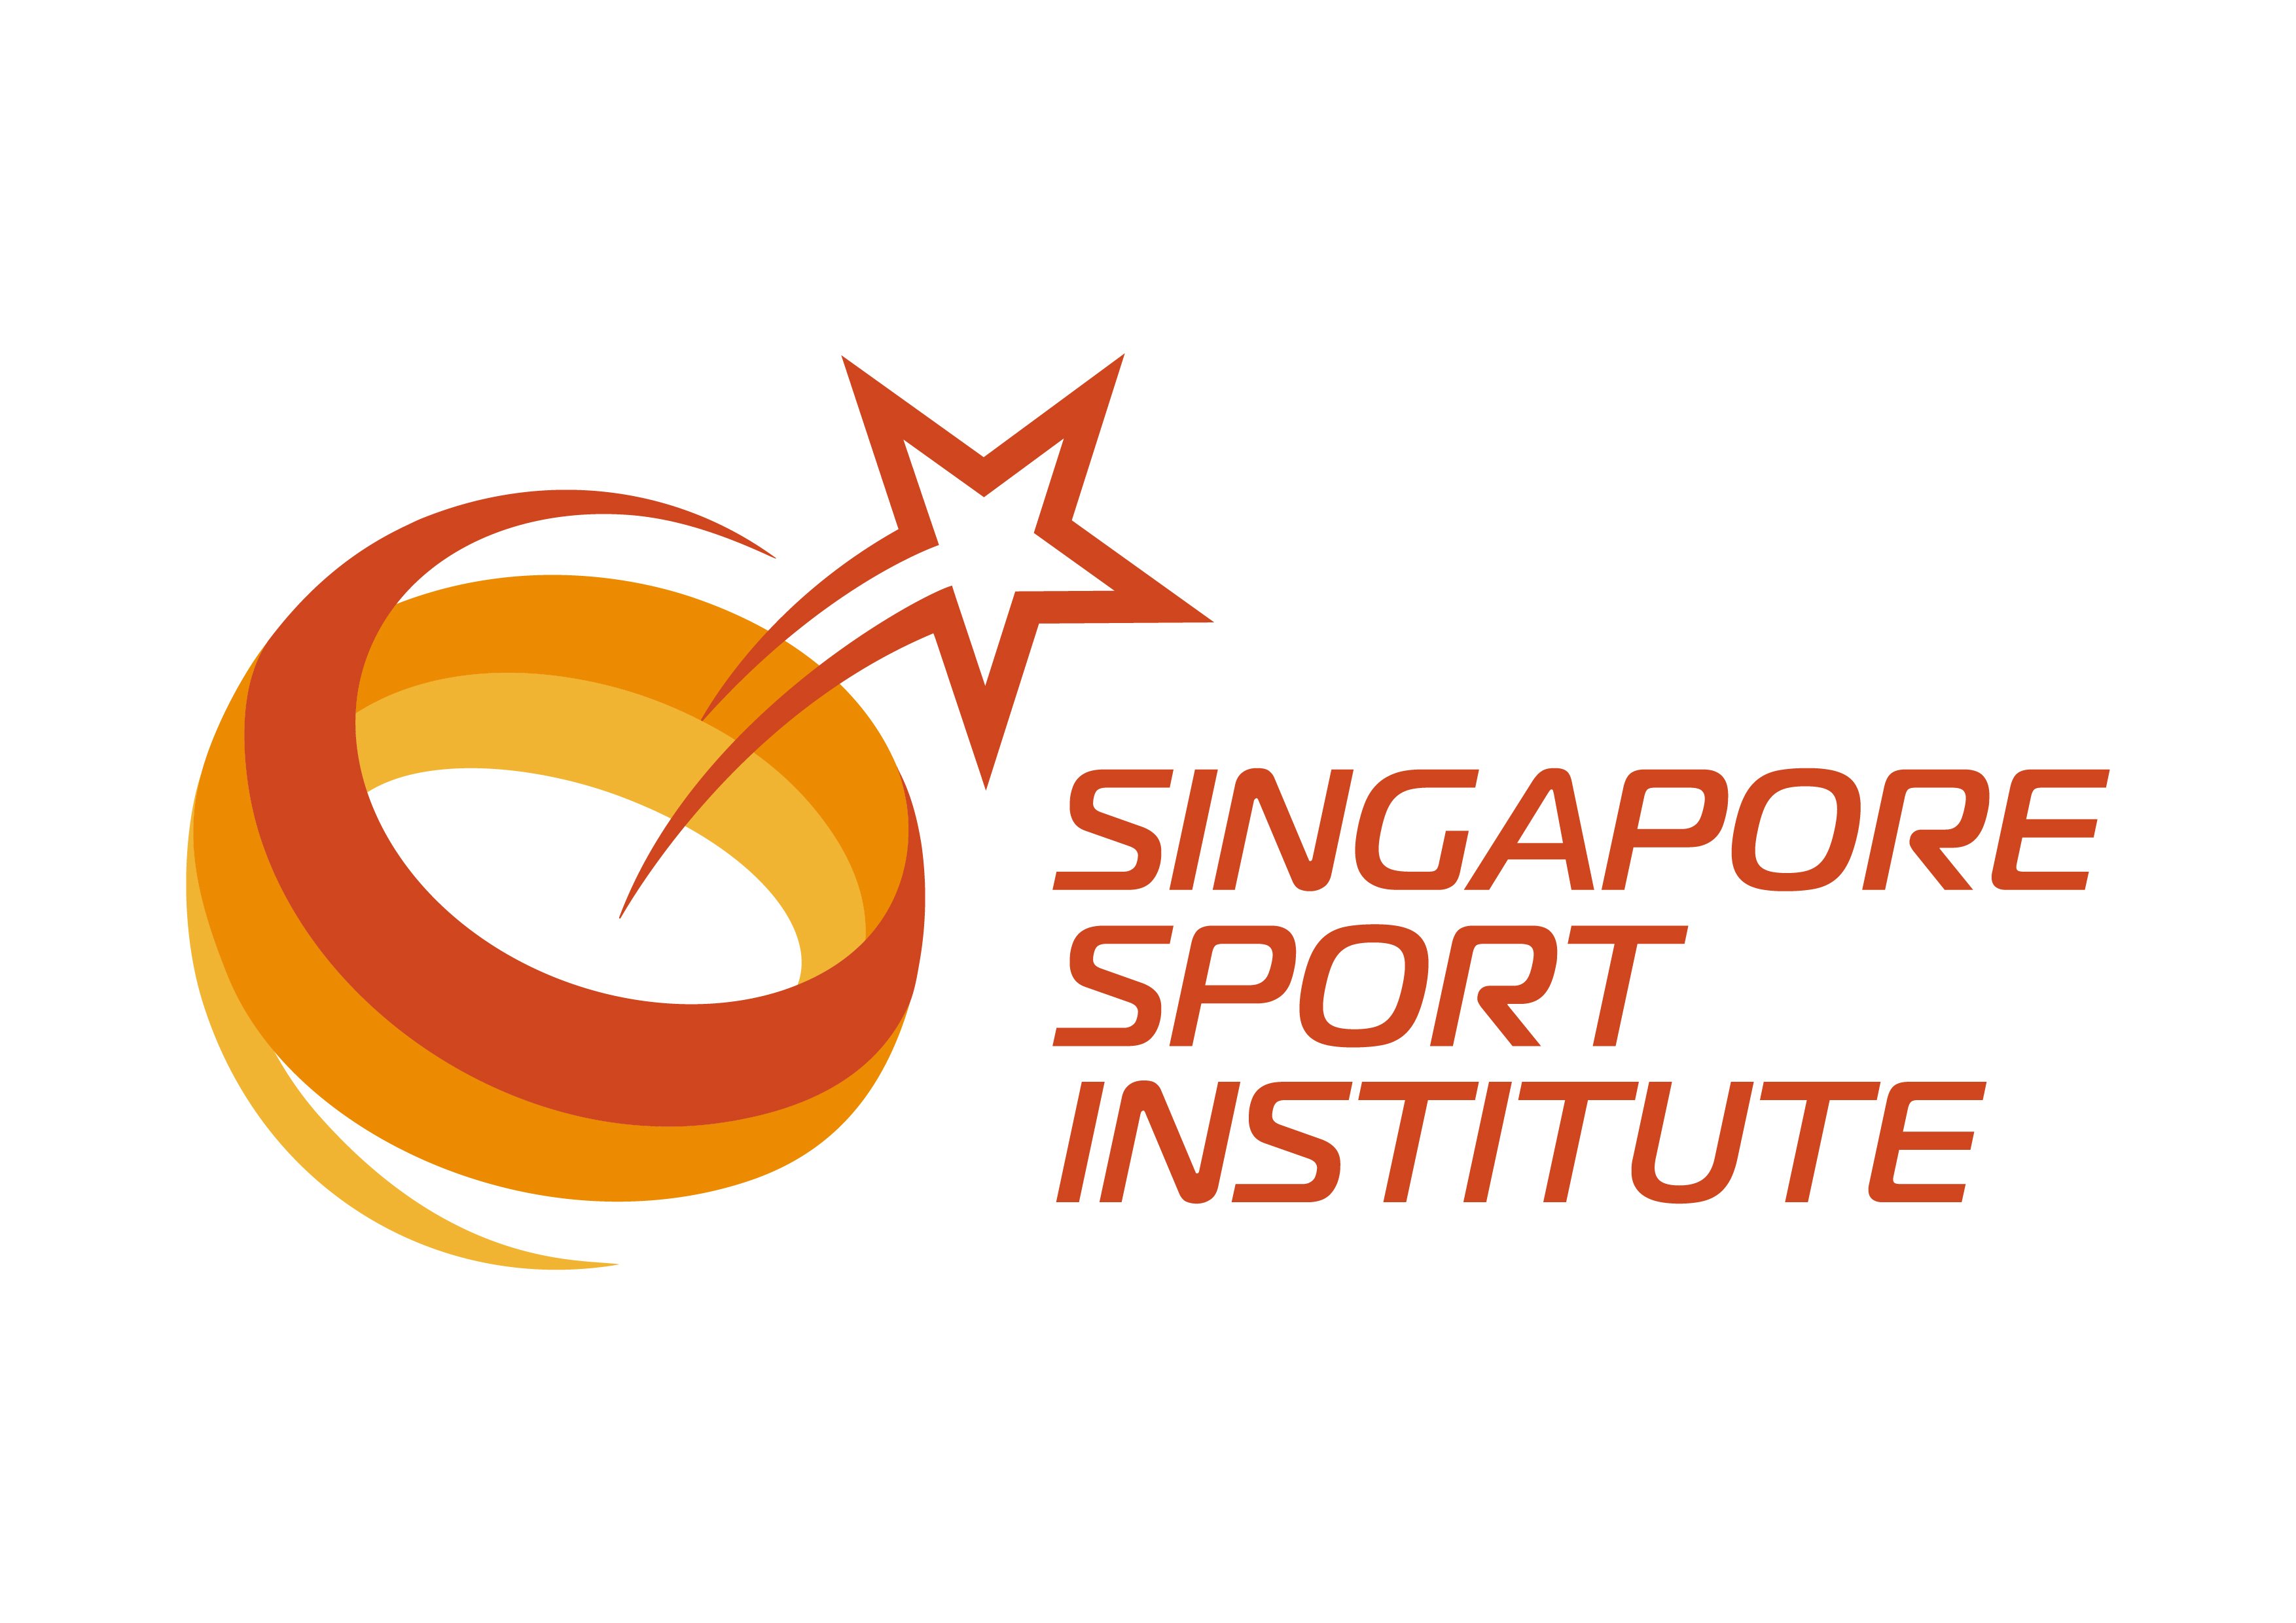 Singapore Sport Institute